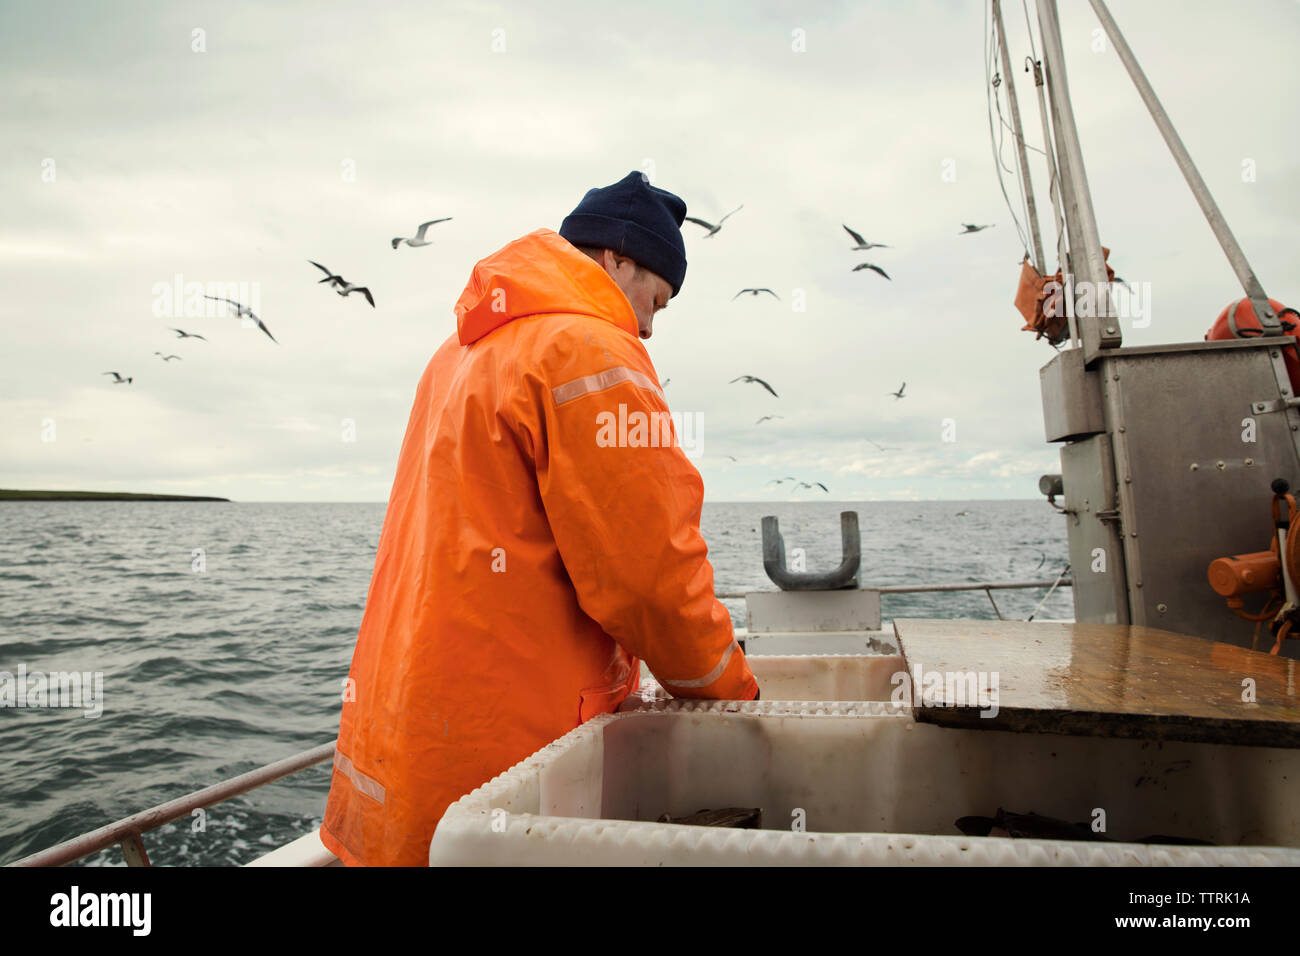 Pescatore in arancione indumenti da lavoro protettiva mentre si lavora in barca sul mare Foto Stock